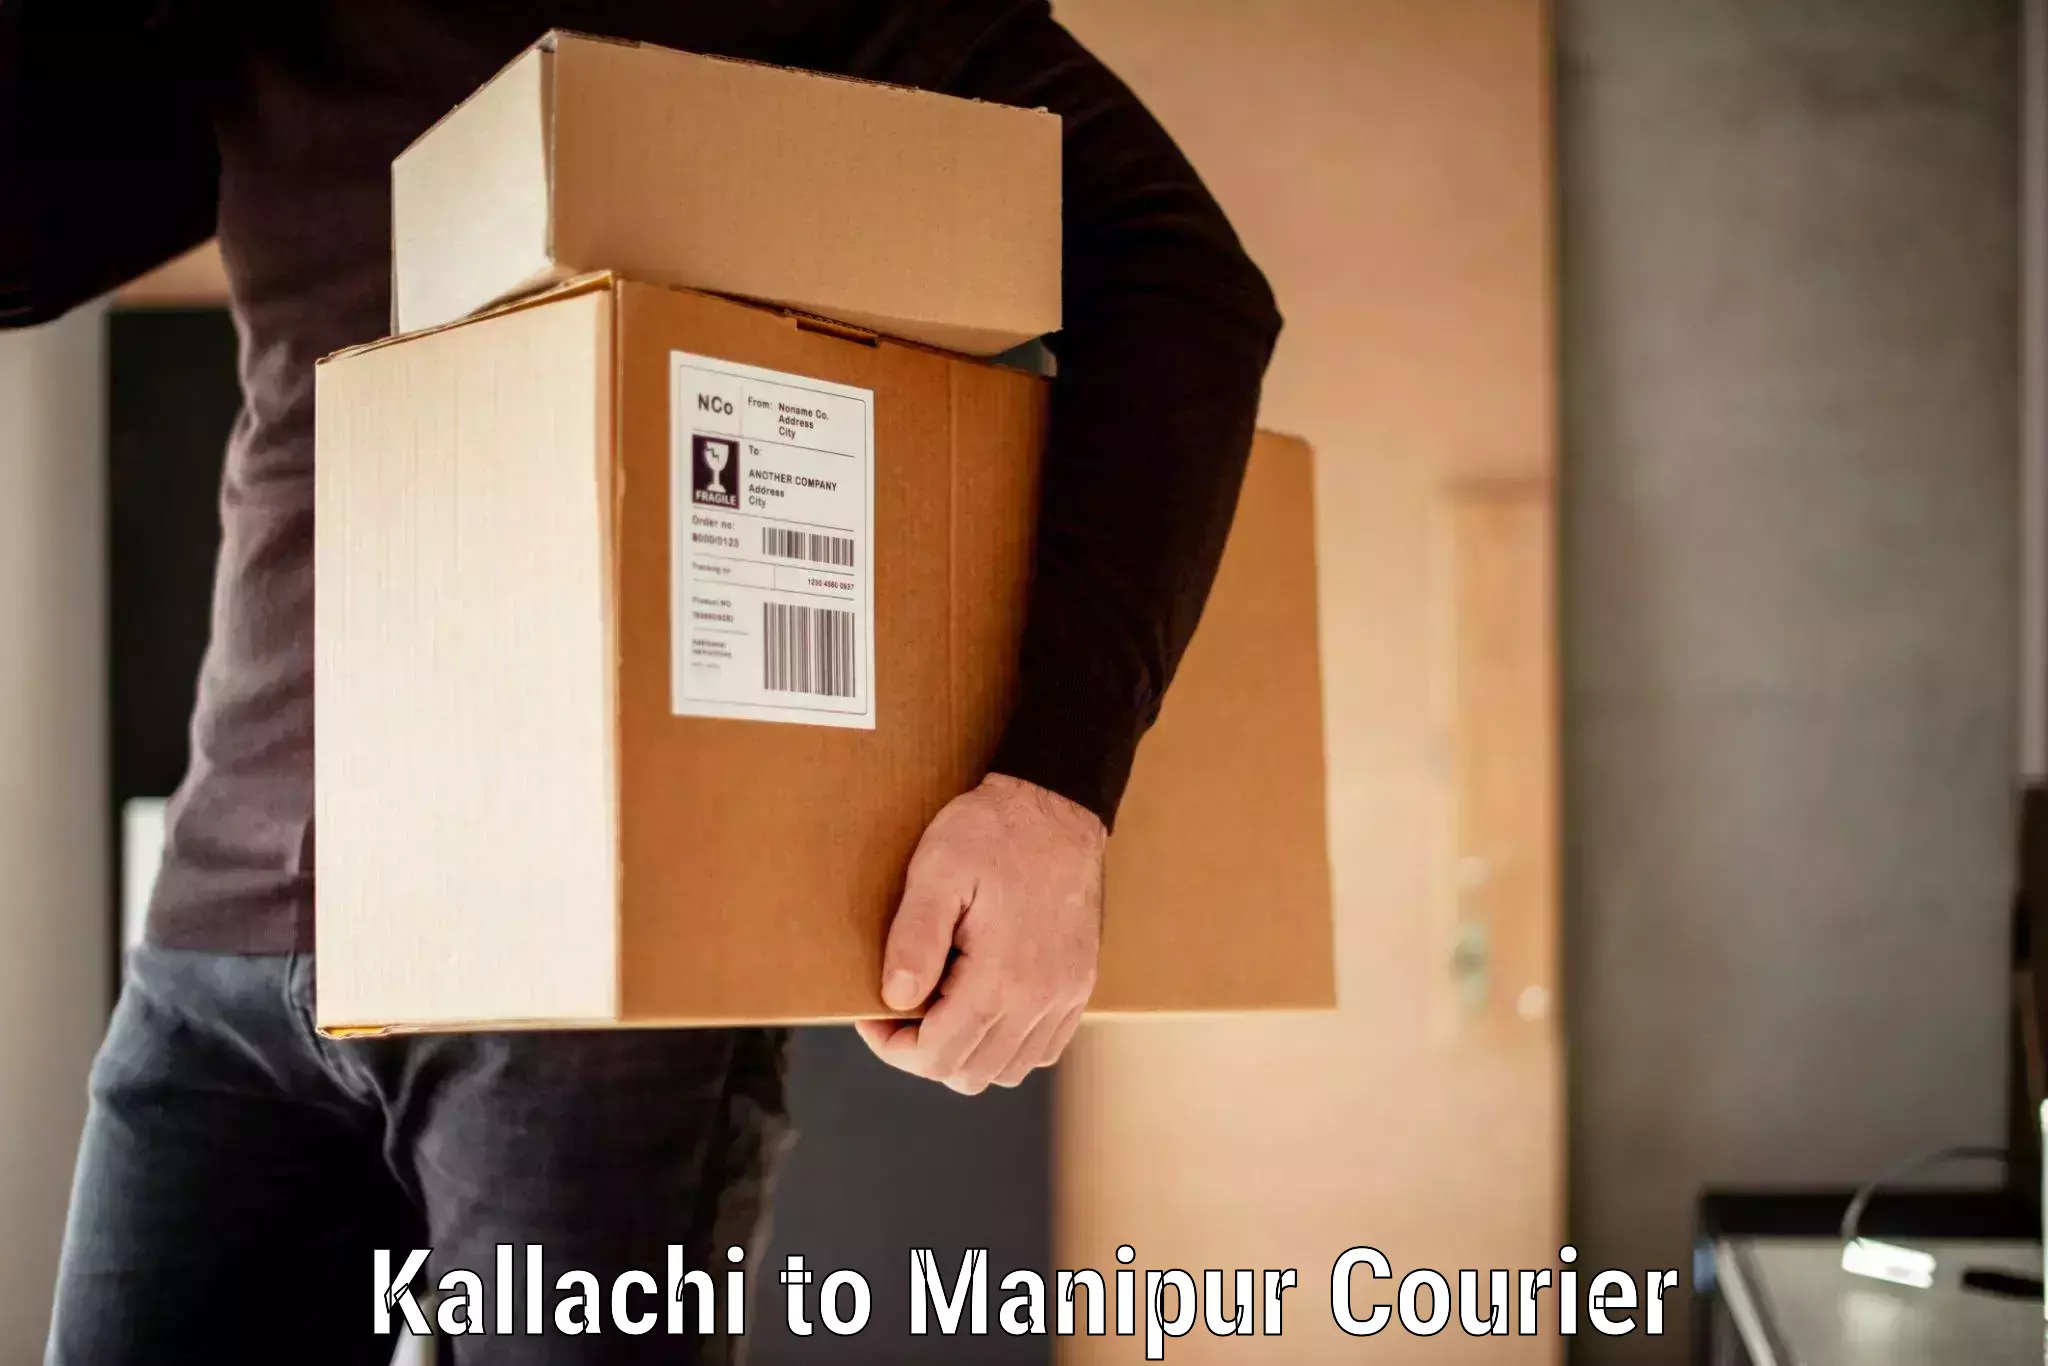 Luggage shipment specialists Kallachi to Ukhrul